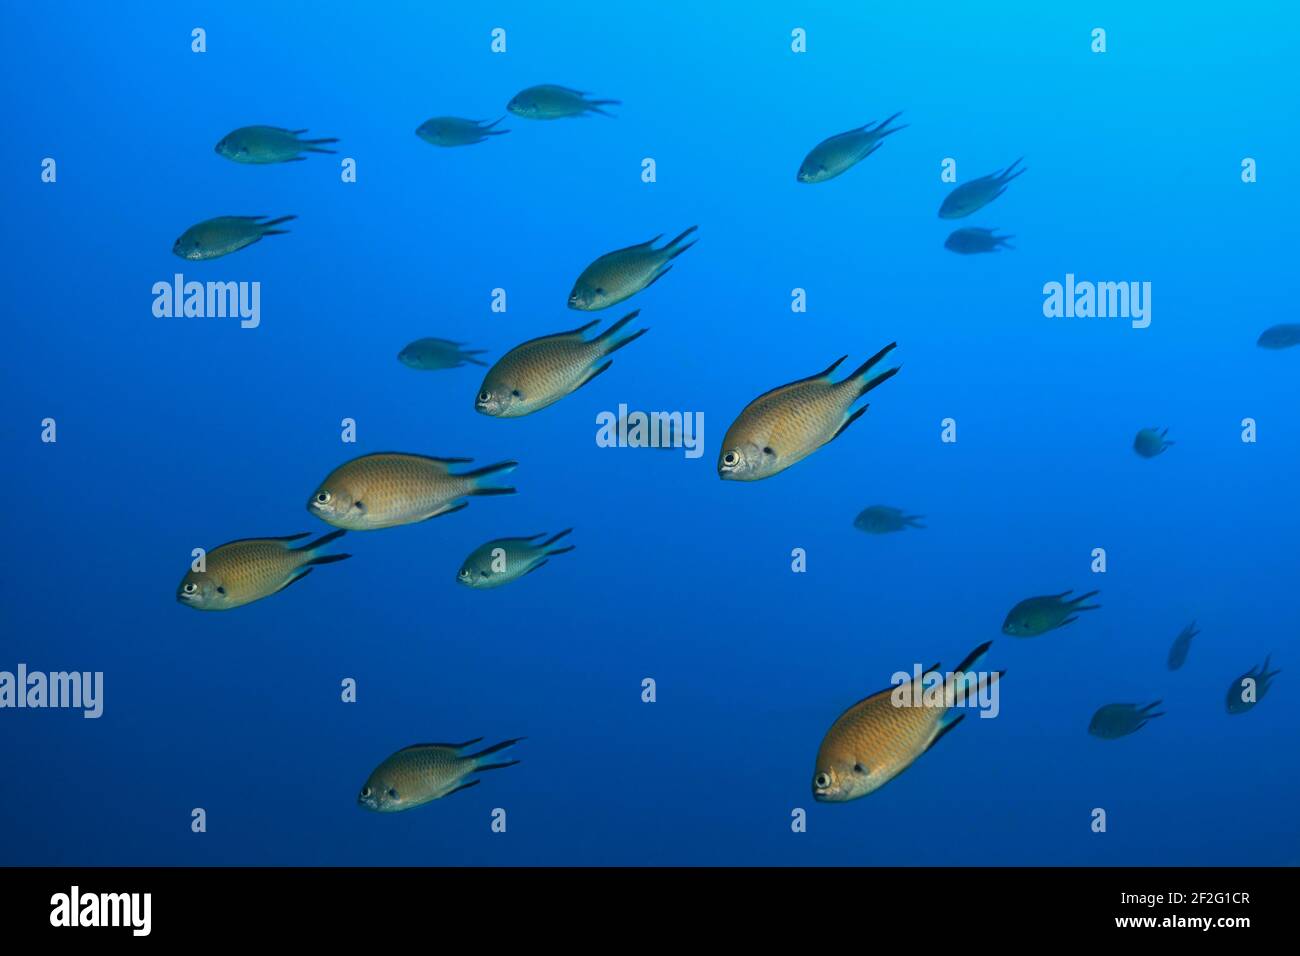 Atlantische Mönchsfische (Chromis limbata), (Kanarische Inseln, Atlantischer Ozean) - Atlantic damselfish (Canary Islands, Atlantic Ocean) Stock Photo